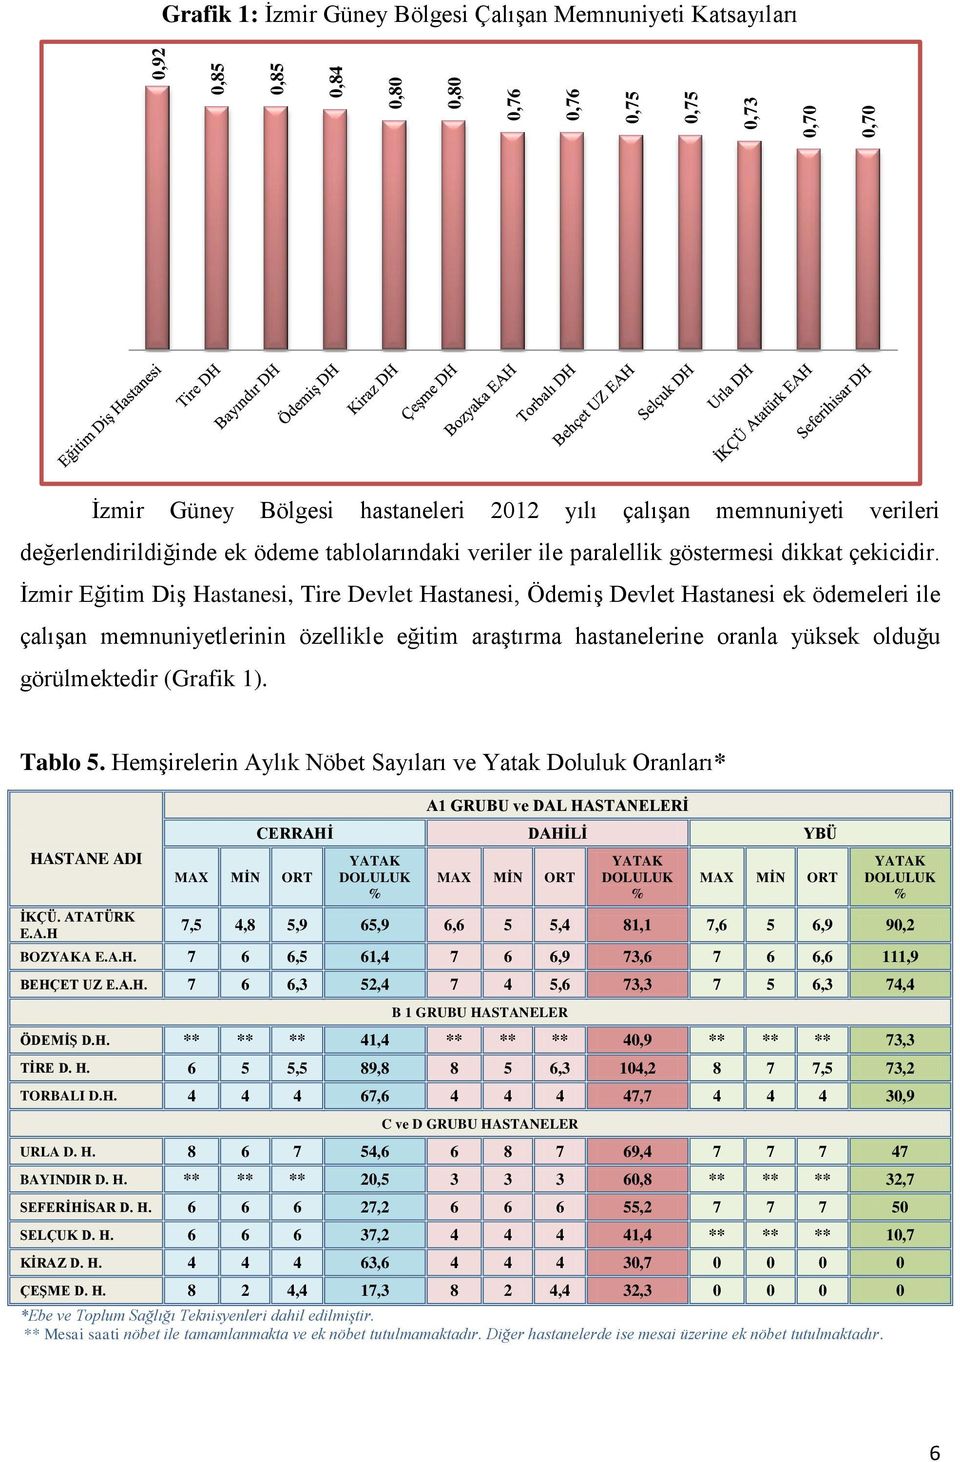 İzmir Eğitim Diş Hastanesi, Tire Devlet Hastanesi, Ödemiş Devlet Hastanesi ek ödemeleri ile çalışan memnuniyetlerinin özellikle eğitim araştırma hastanelerine oranla yüksek olduğu görülmektedir